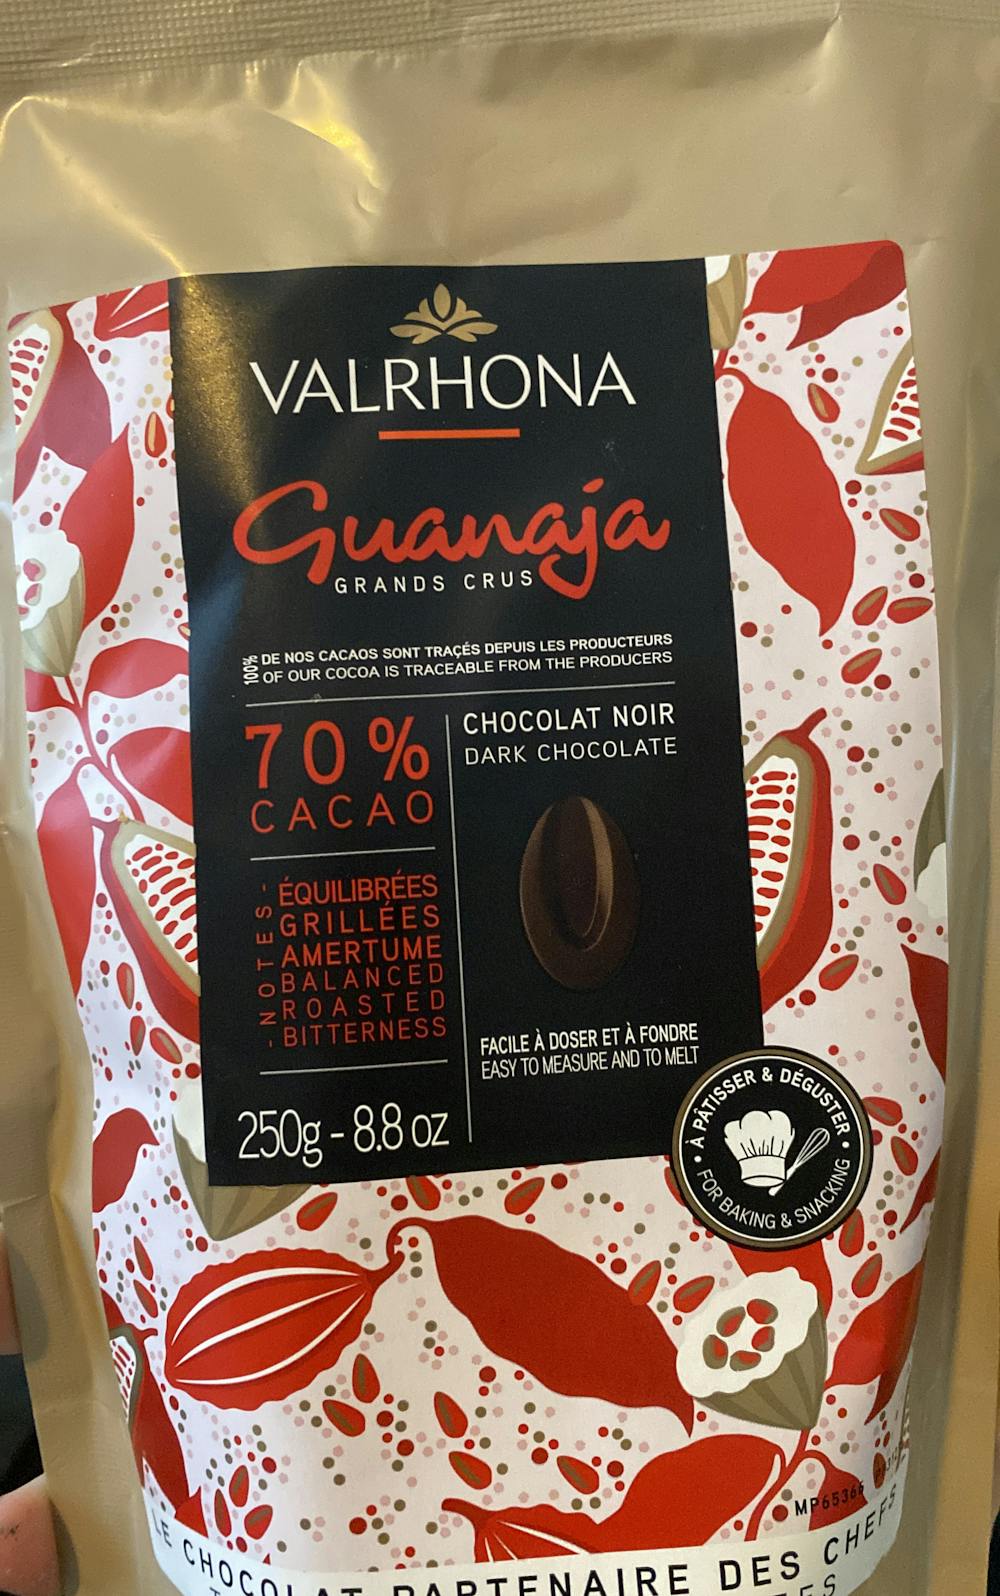 Guanaja grands crus dark chocolate, Valrhona